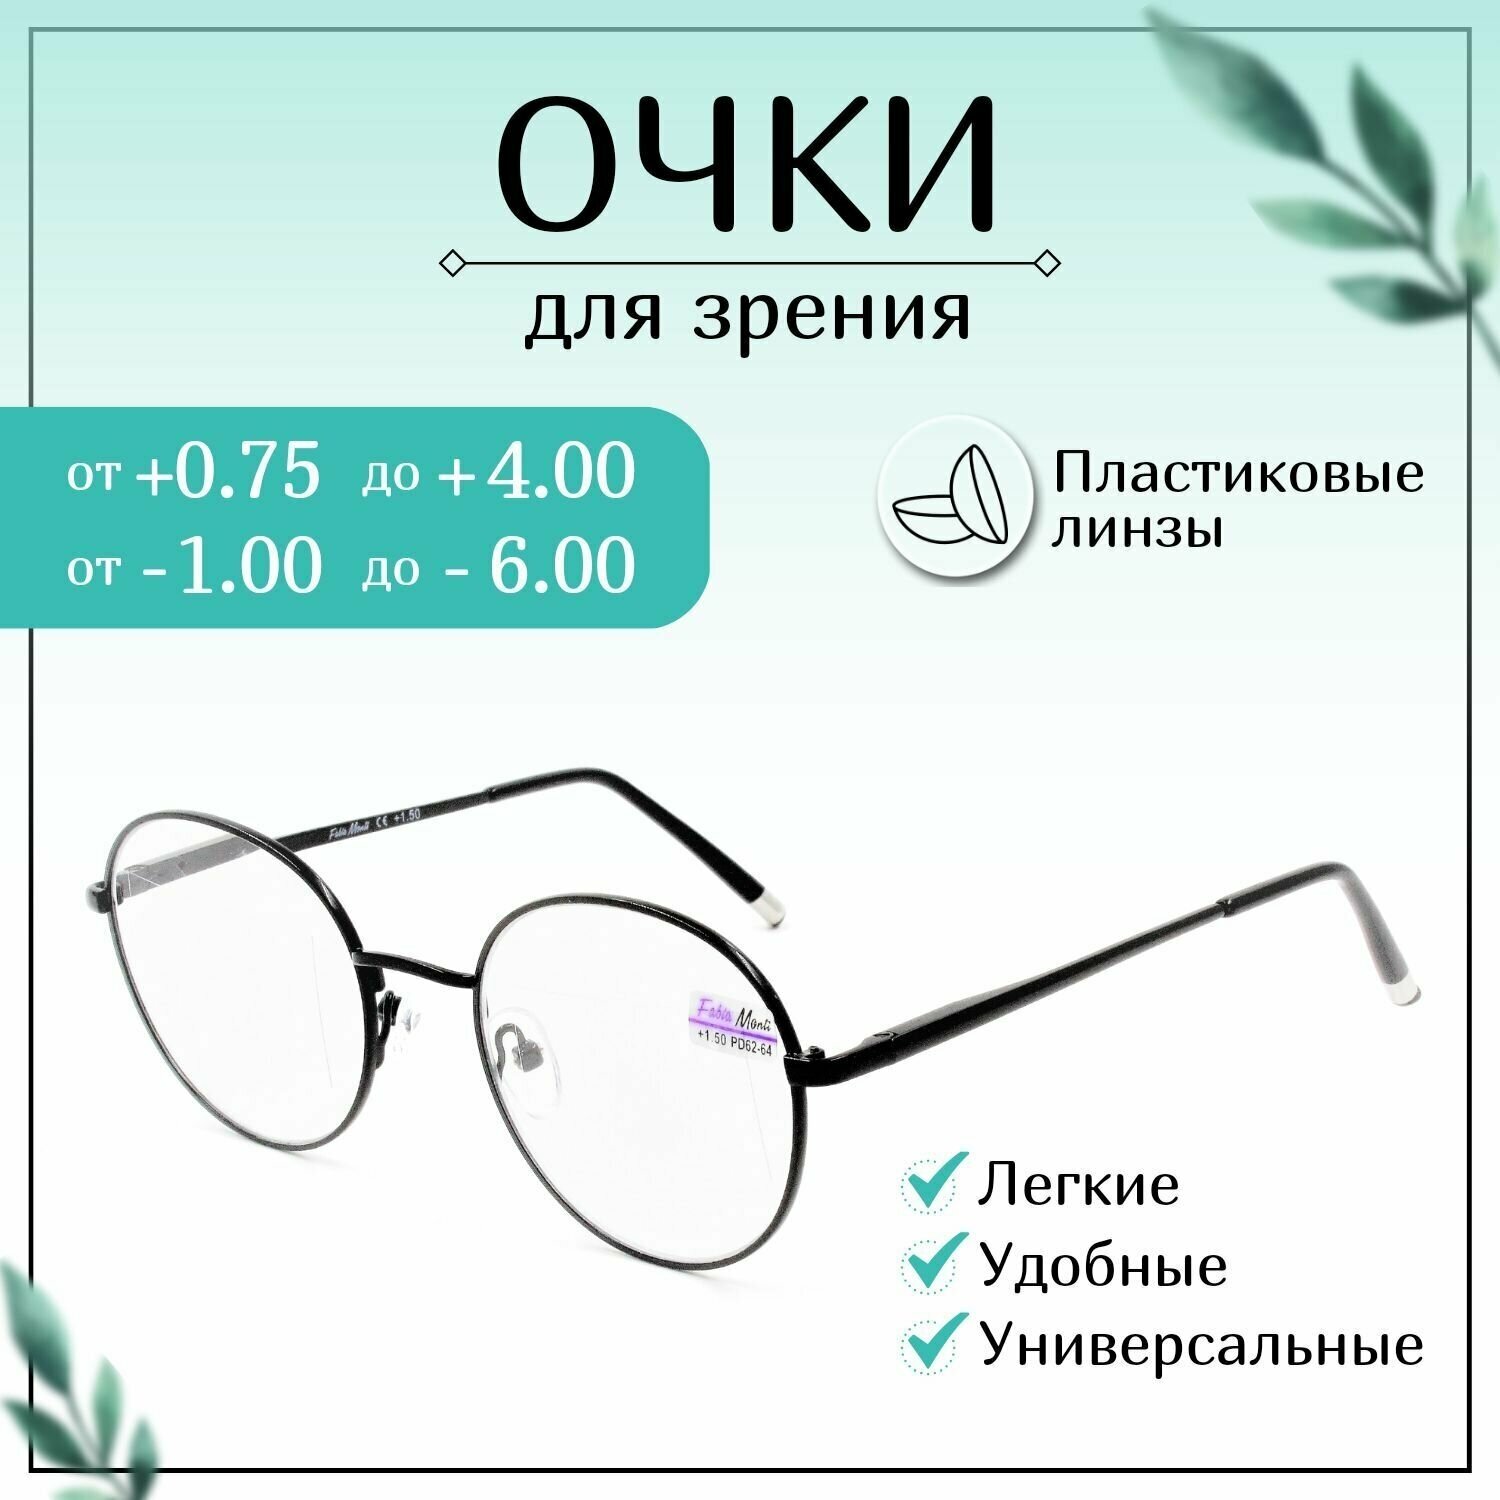 Готовые очки для зрения с диоптриями -1,00, FABIA MONTI готовые, женские, мужские корригирующие